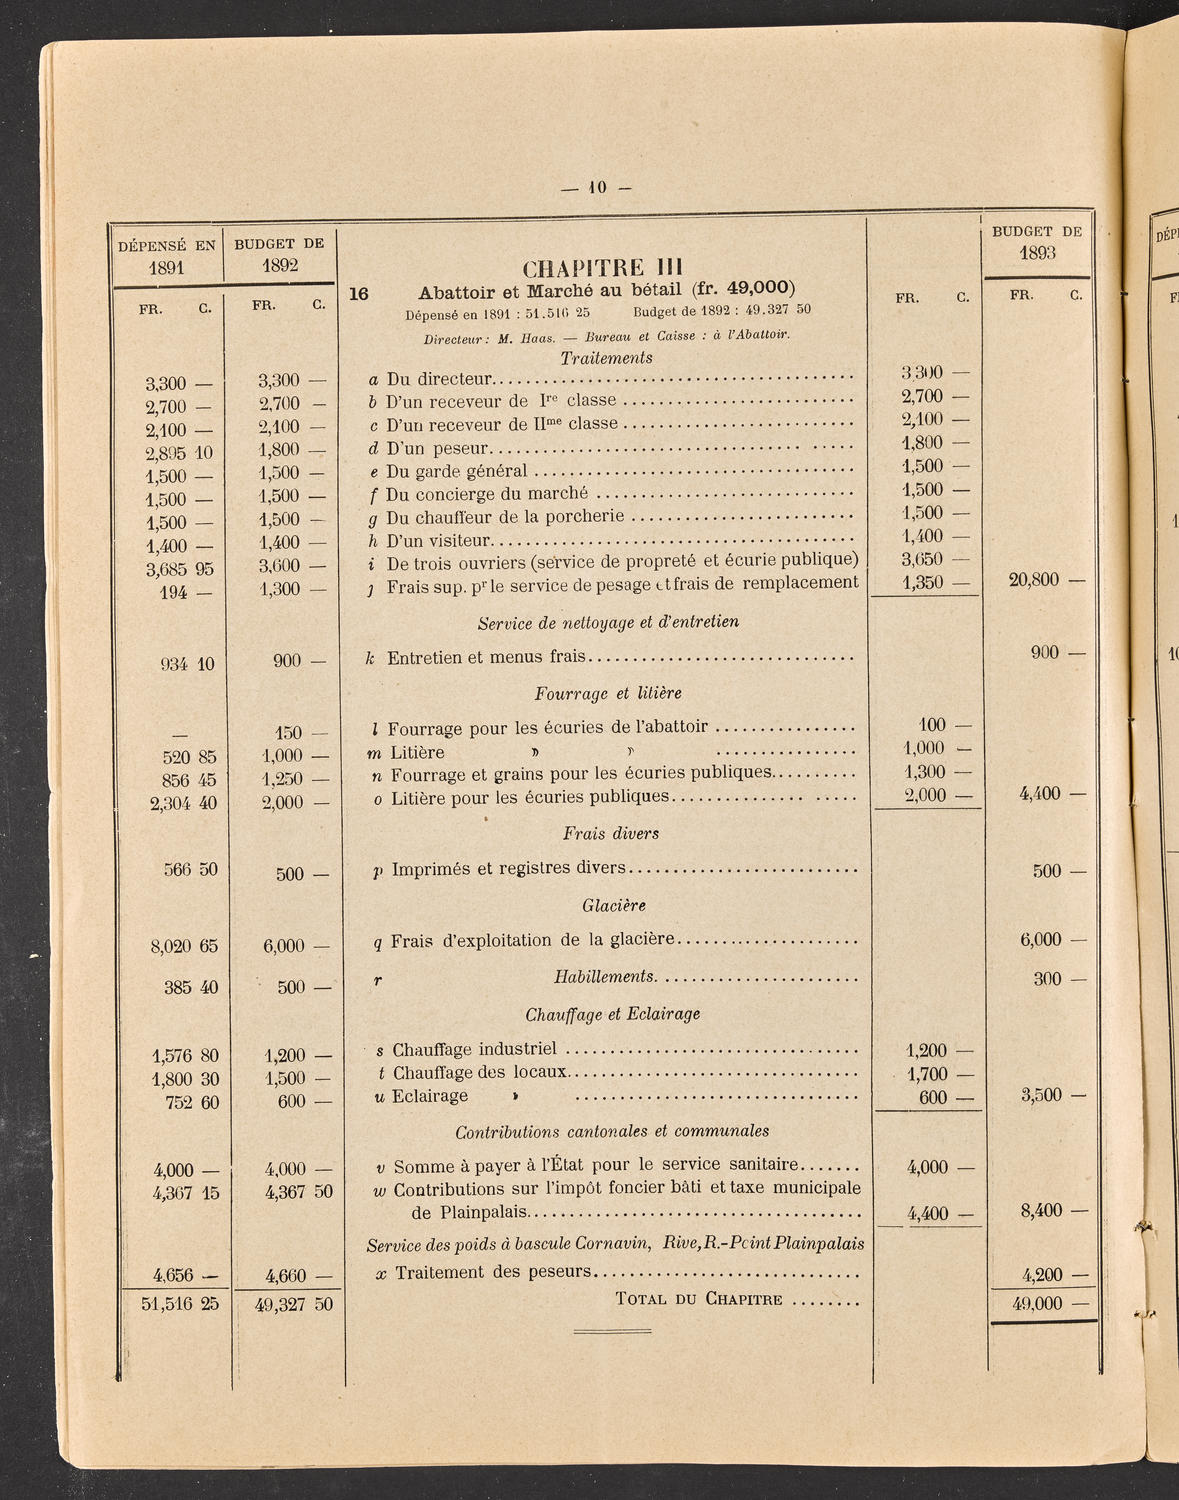 Budget de la Ville de Genève - Exercise de 1893, page 16 of 32